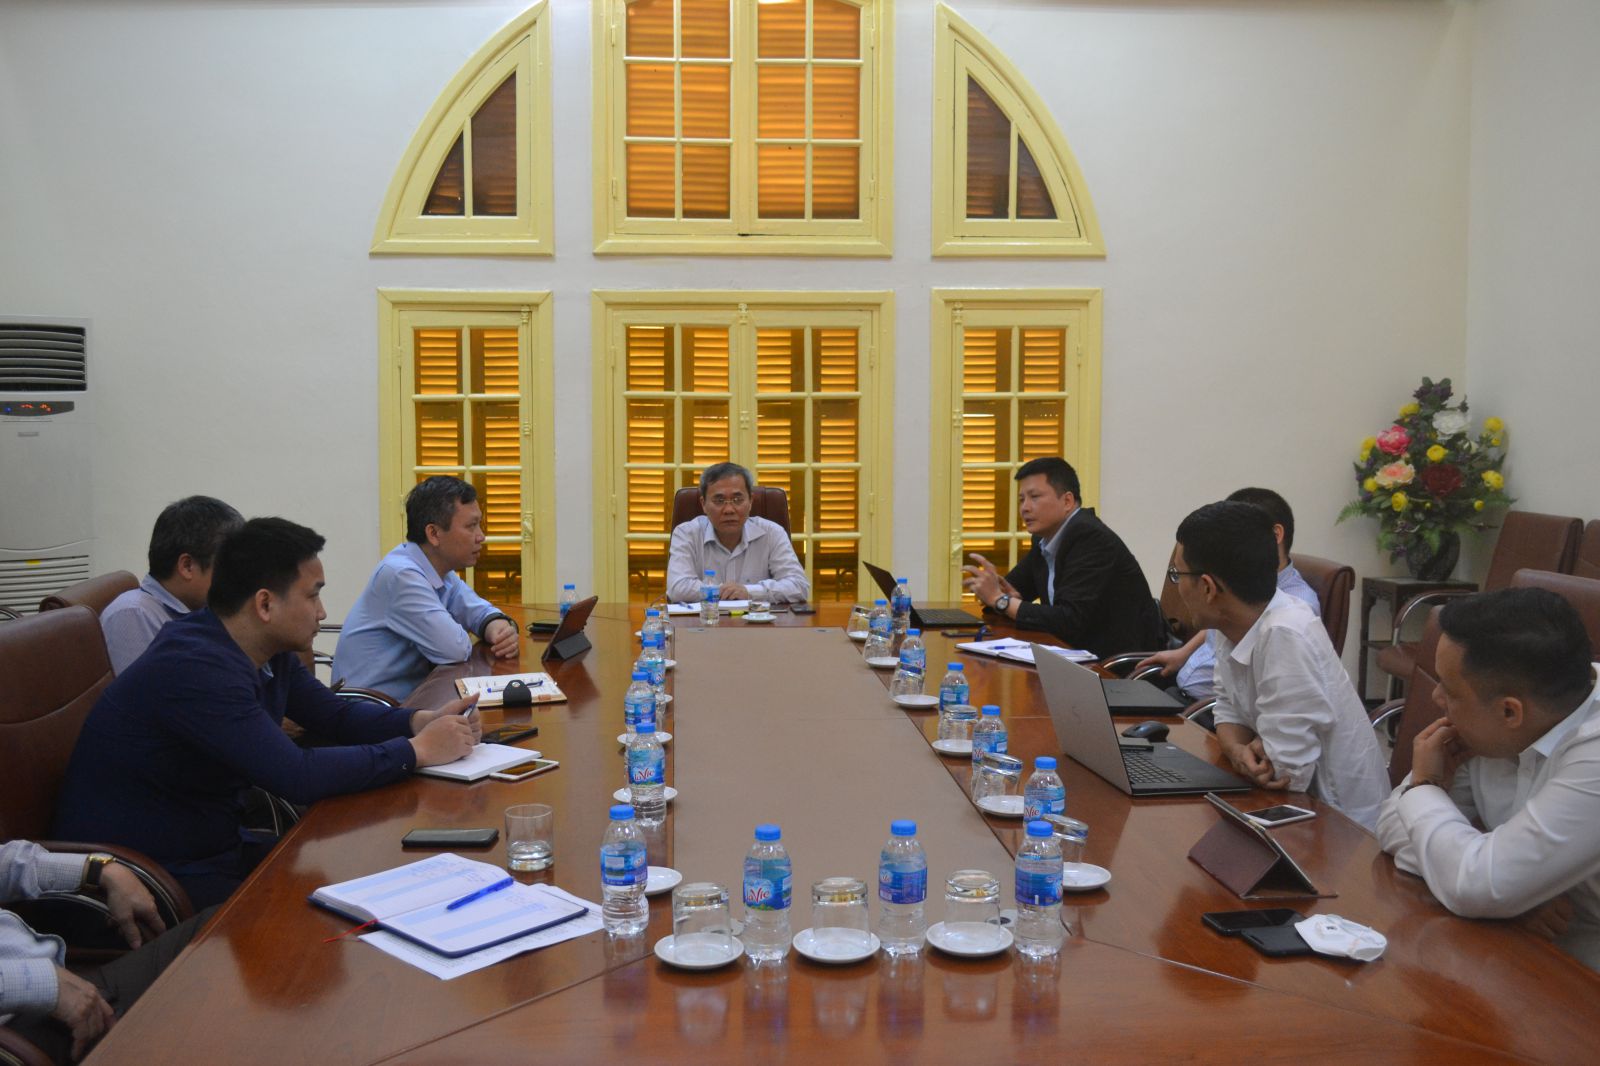 Phó Tổng Giám đốc BHXH Việt Nam Phạm Lương Sơn chủ trì buổi họp nhằm công tác khai báo y tế của người dân được diễn ra thuận tiện, đảm bảo chính xác, hiệu quả